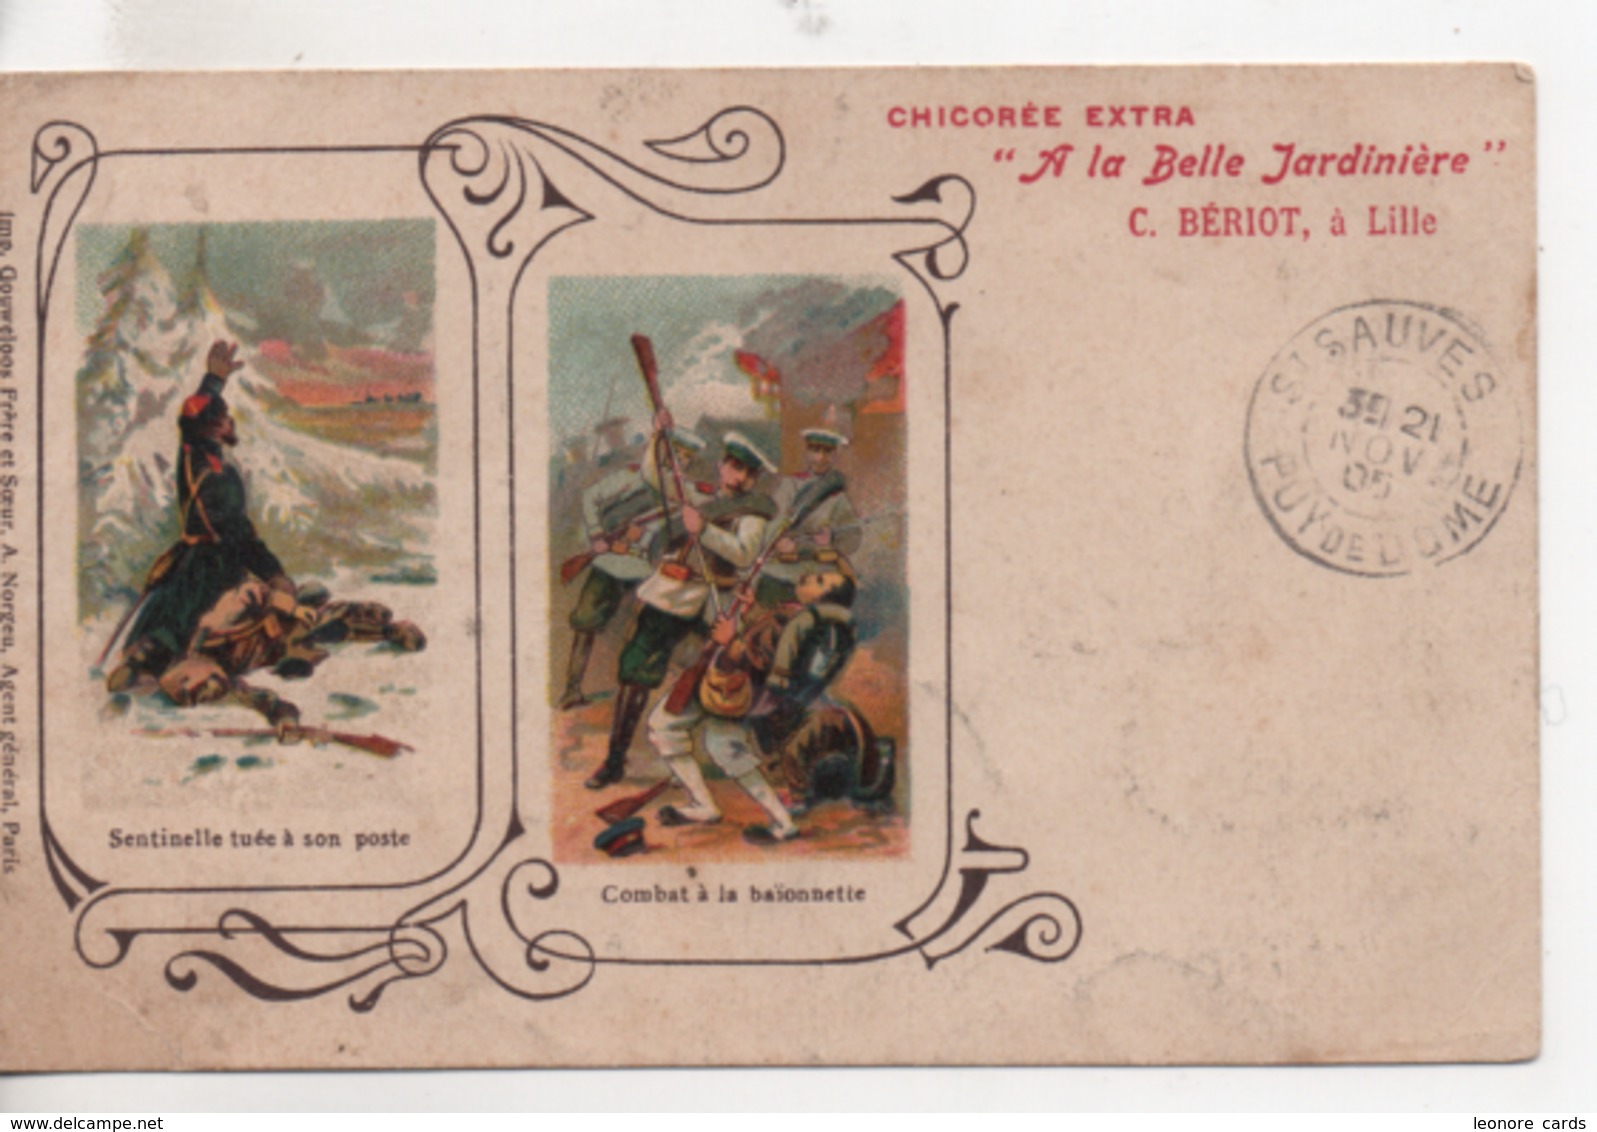 CPA.Publicité.Chicorée Extra.A La Belle Jardinière.1905.sentinelle Tuée Et Combat Baïonnette - Reclame